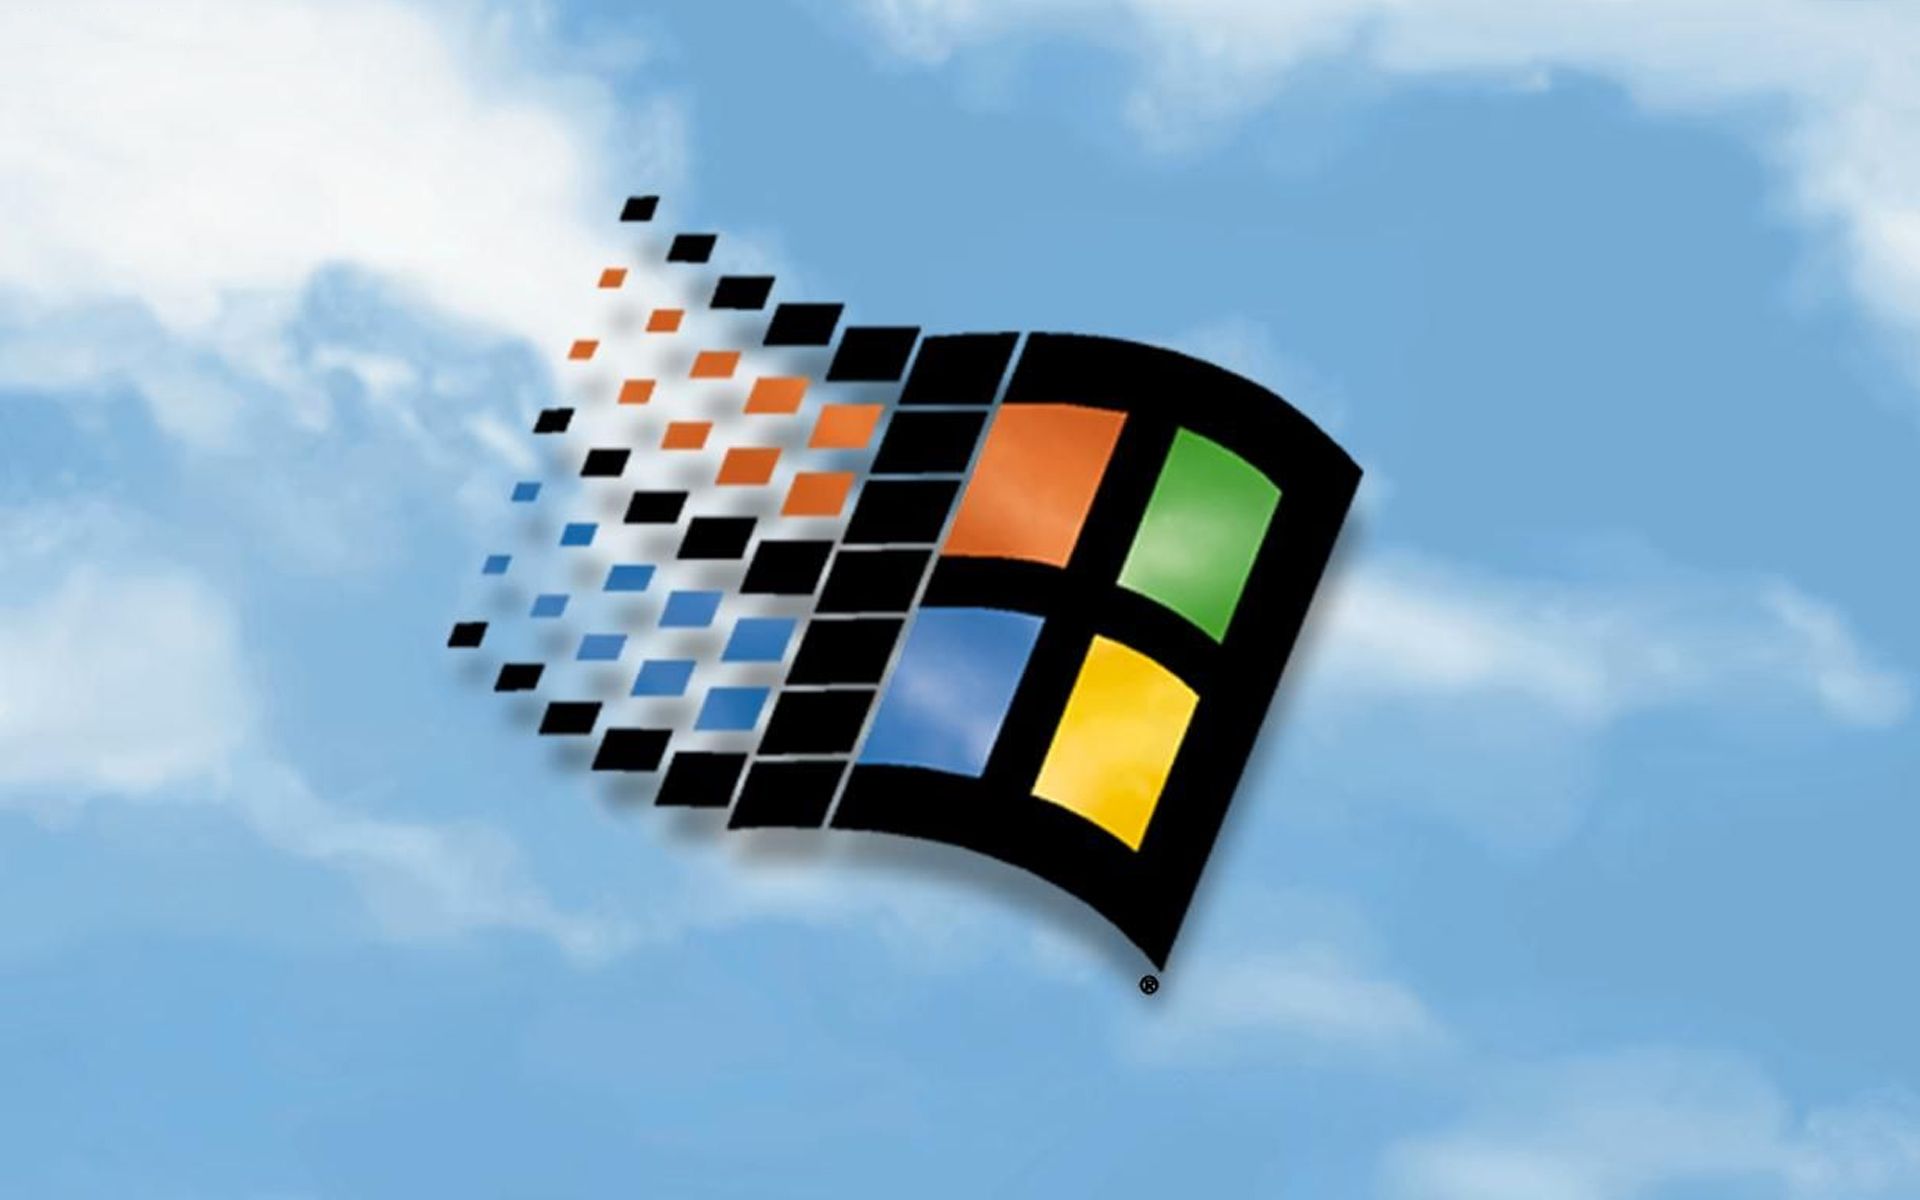 Nếu bạn là một fan hâm mộ của Microsoft Windows, hãy tìm hiểu thêm về bộ sưu tập hình nền hoàn toàn mới được thiết kế bởi chính người dùng như bạn. Nhấp vào bức ảnh và trải nghiệm những bức ảnh nền tuyệt đẹp từ Microsoft Windows nhé!